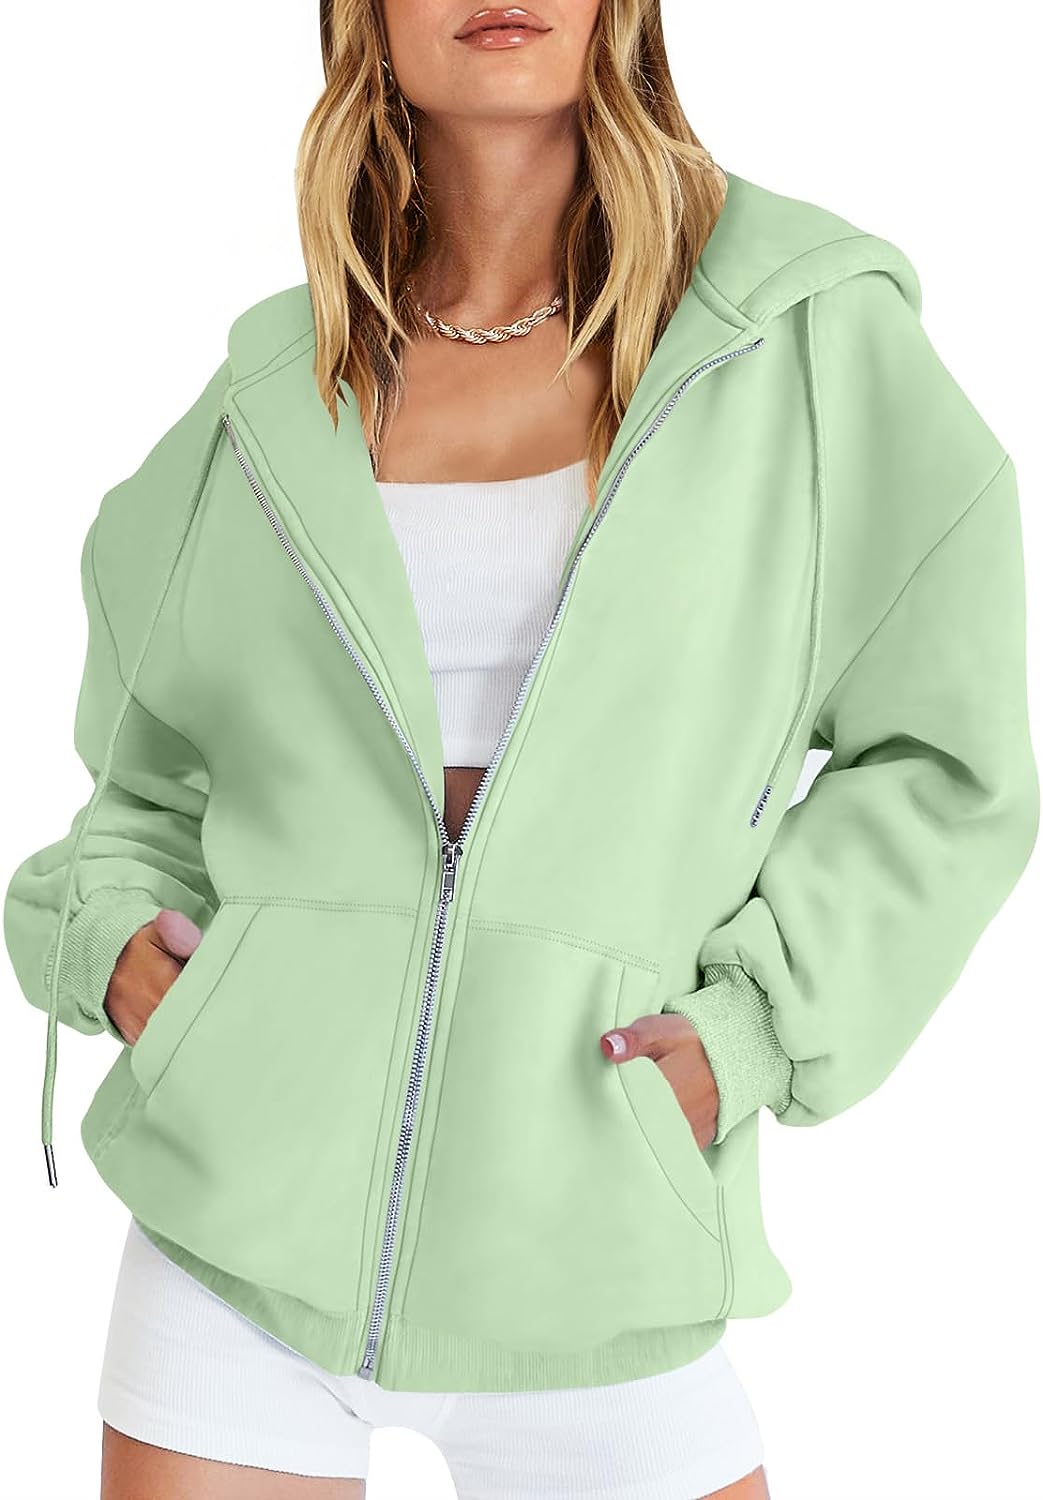 Caracilia Women's Zip Up Hoodies Teen Girls Oversized Sweatshirt